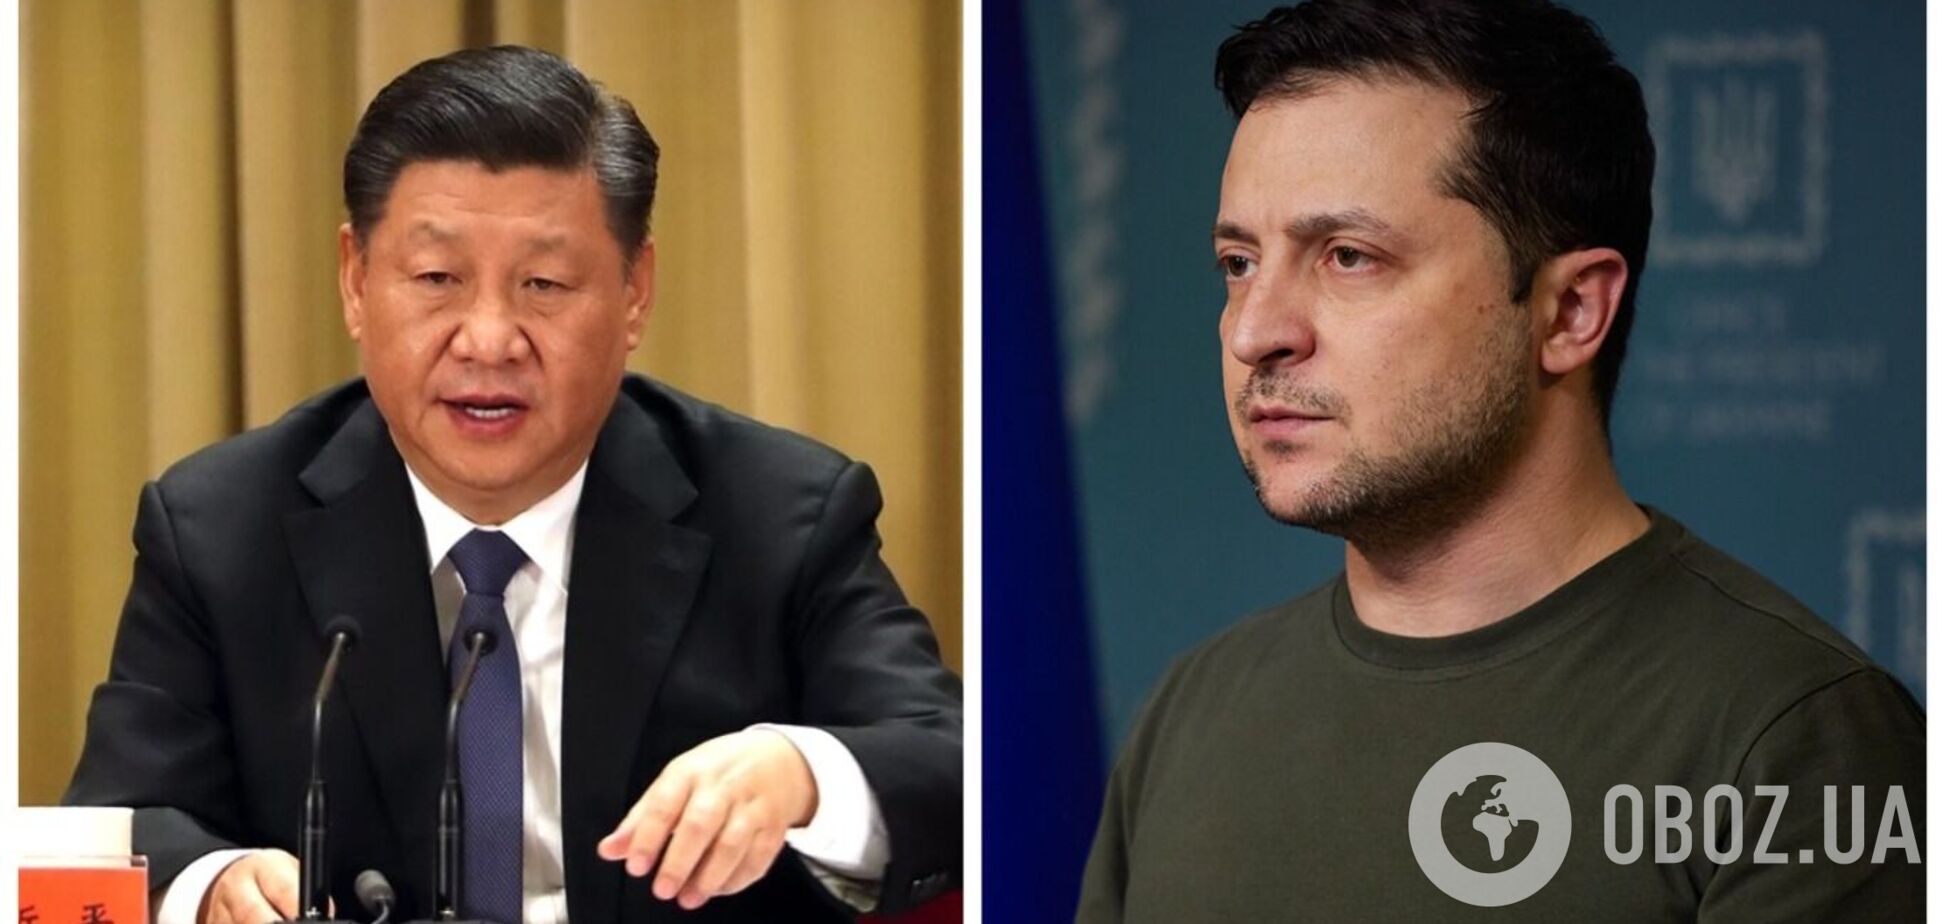 'Позиция Пекина очень последовательная и четкая': в Китае отреагировали на слова Зеленского по поводу желания встретиться с Си Цзиньпином